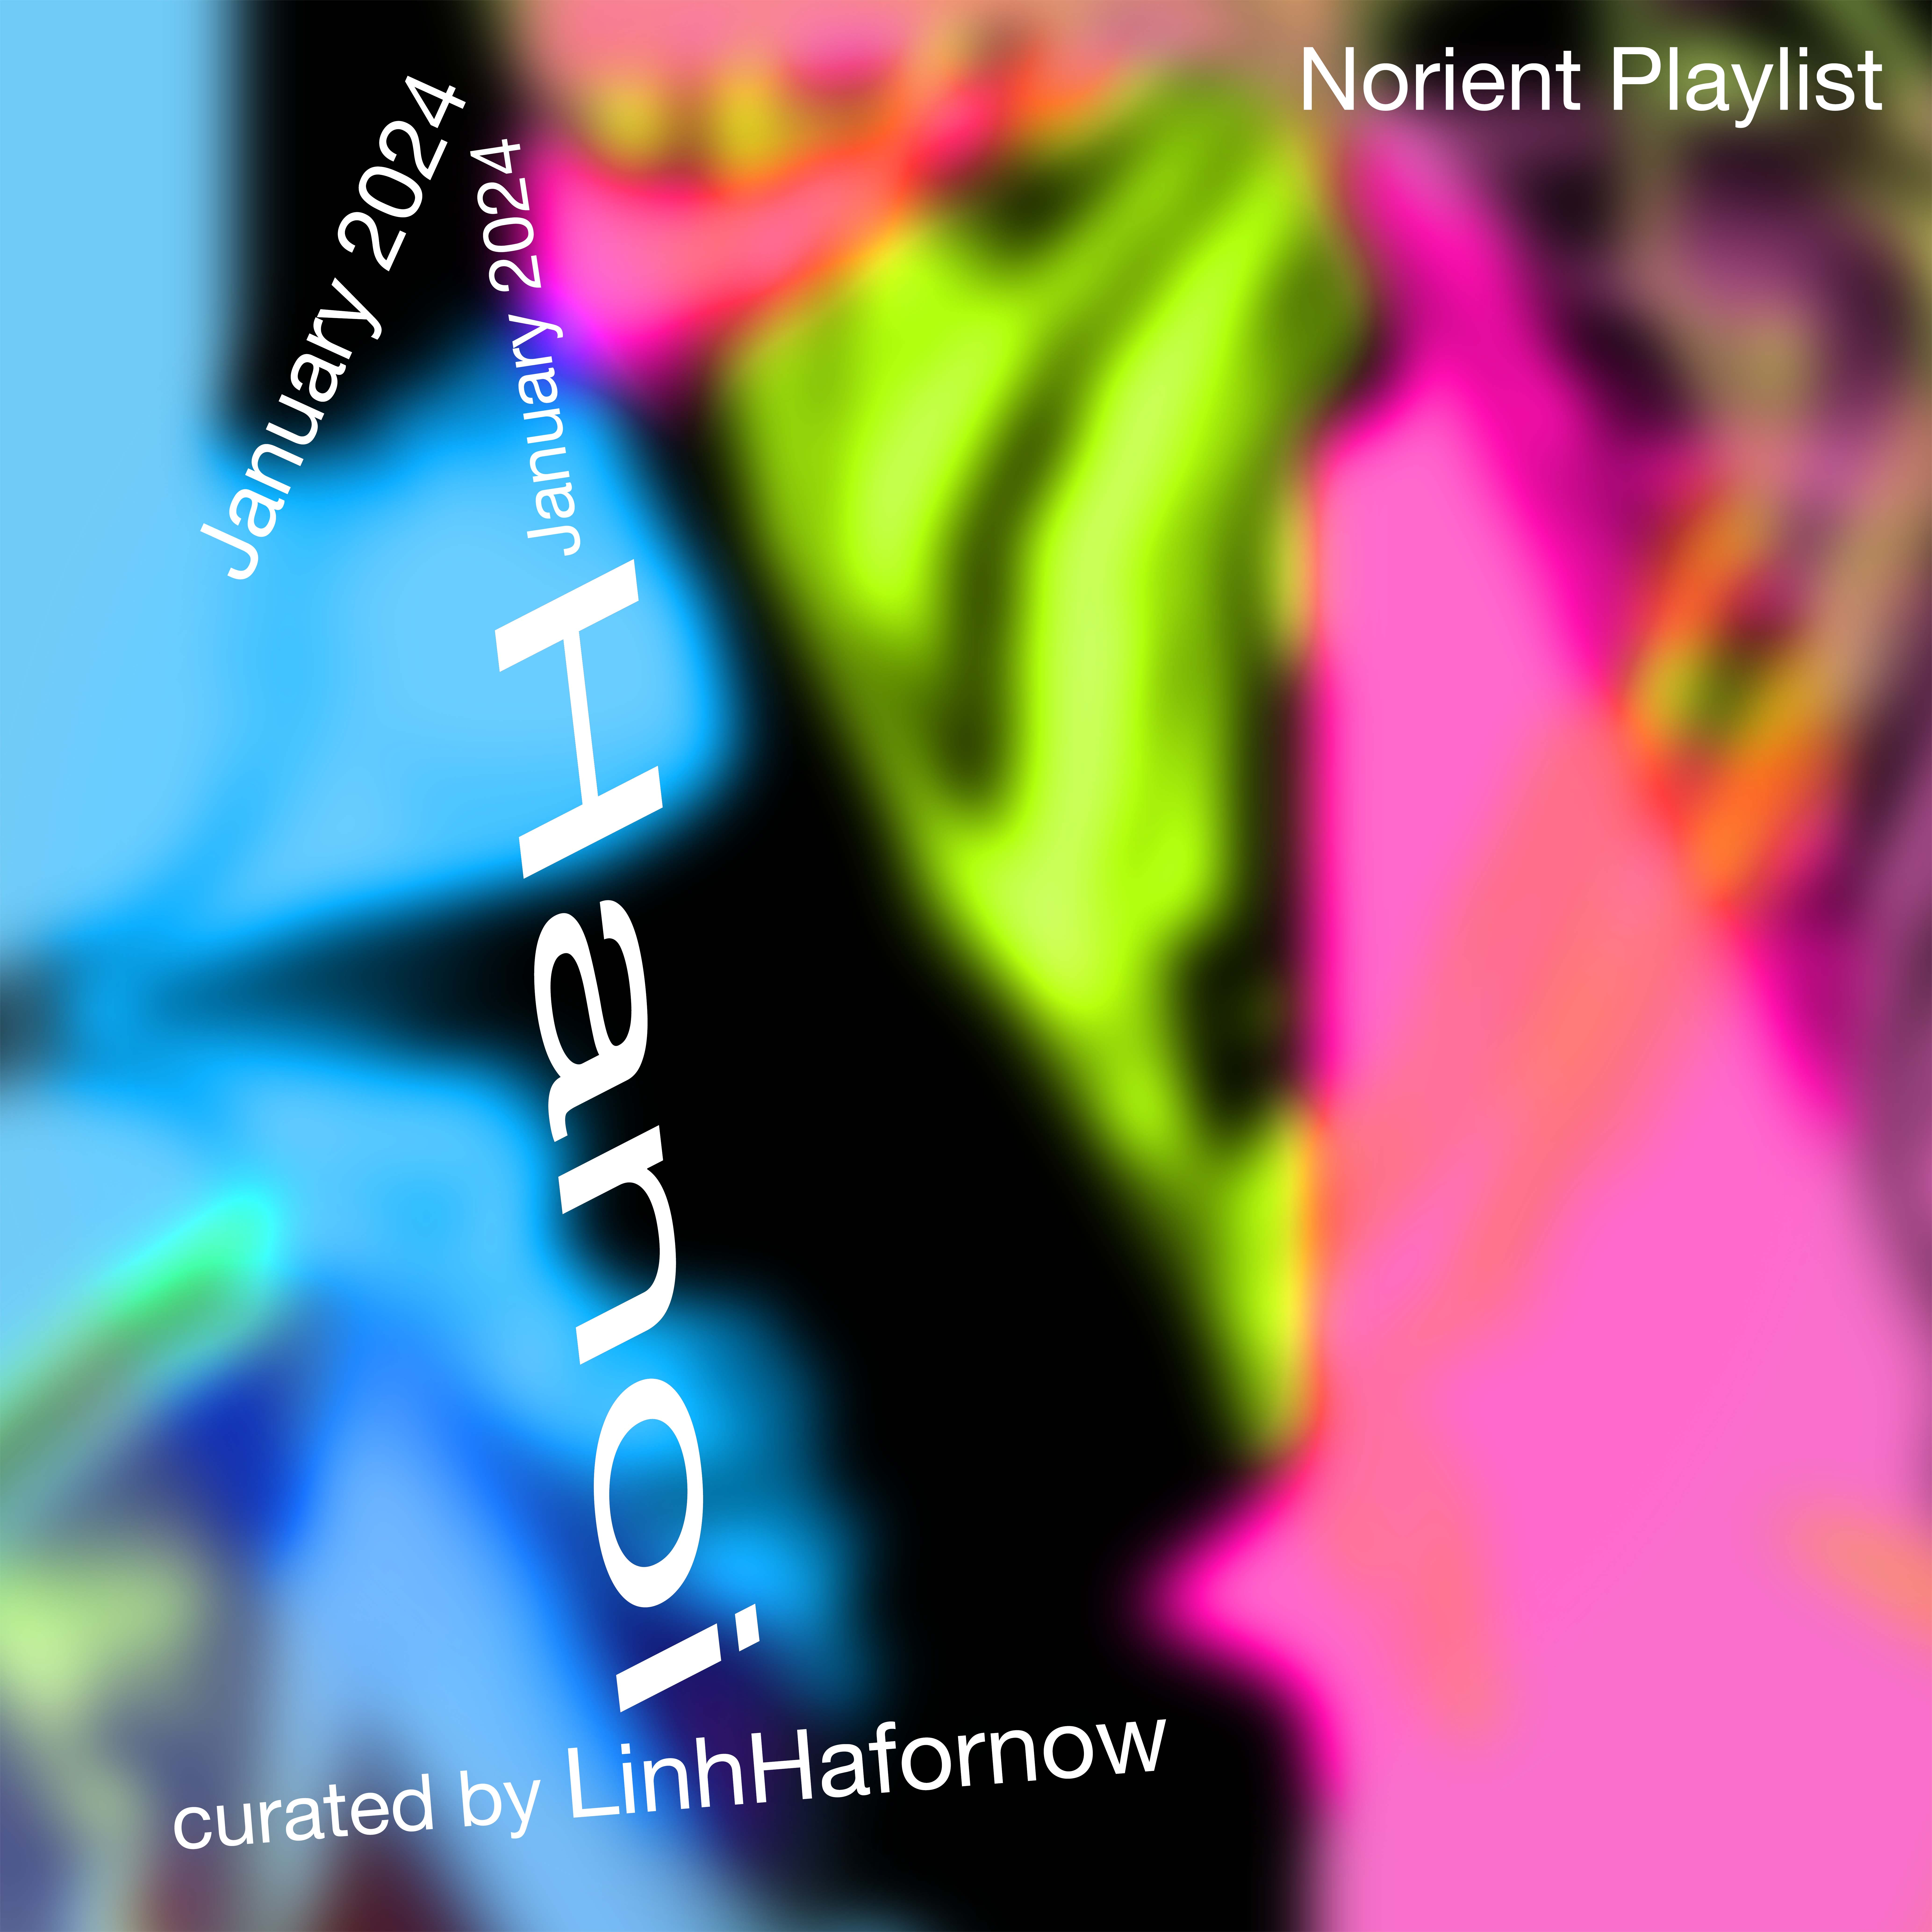 Norient Playlist 01/24: Hanoi.